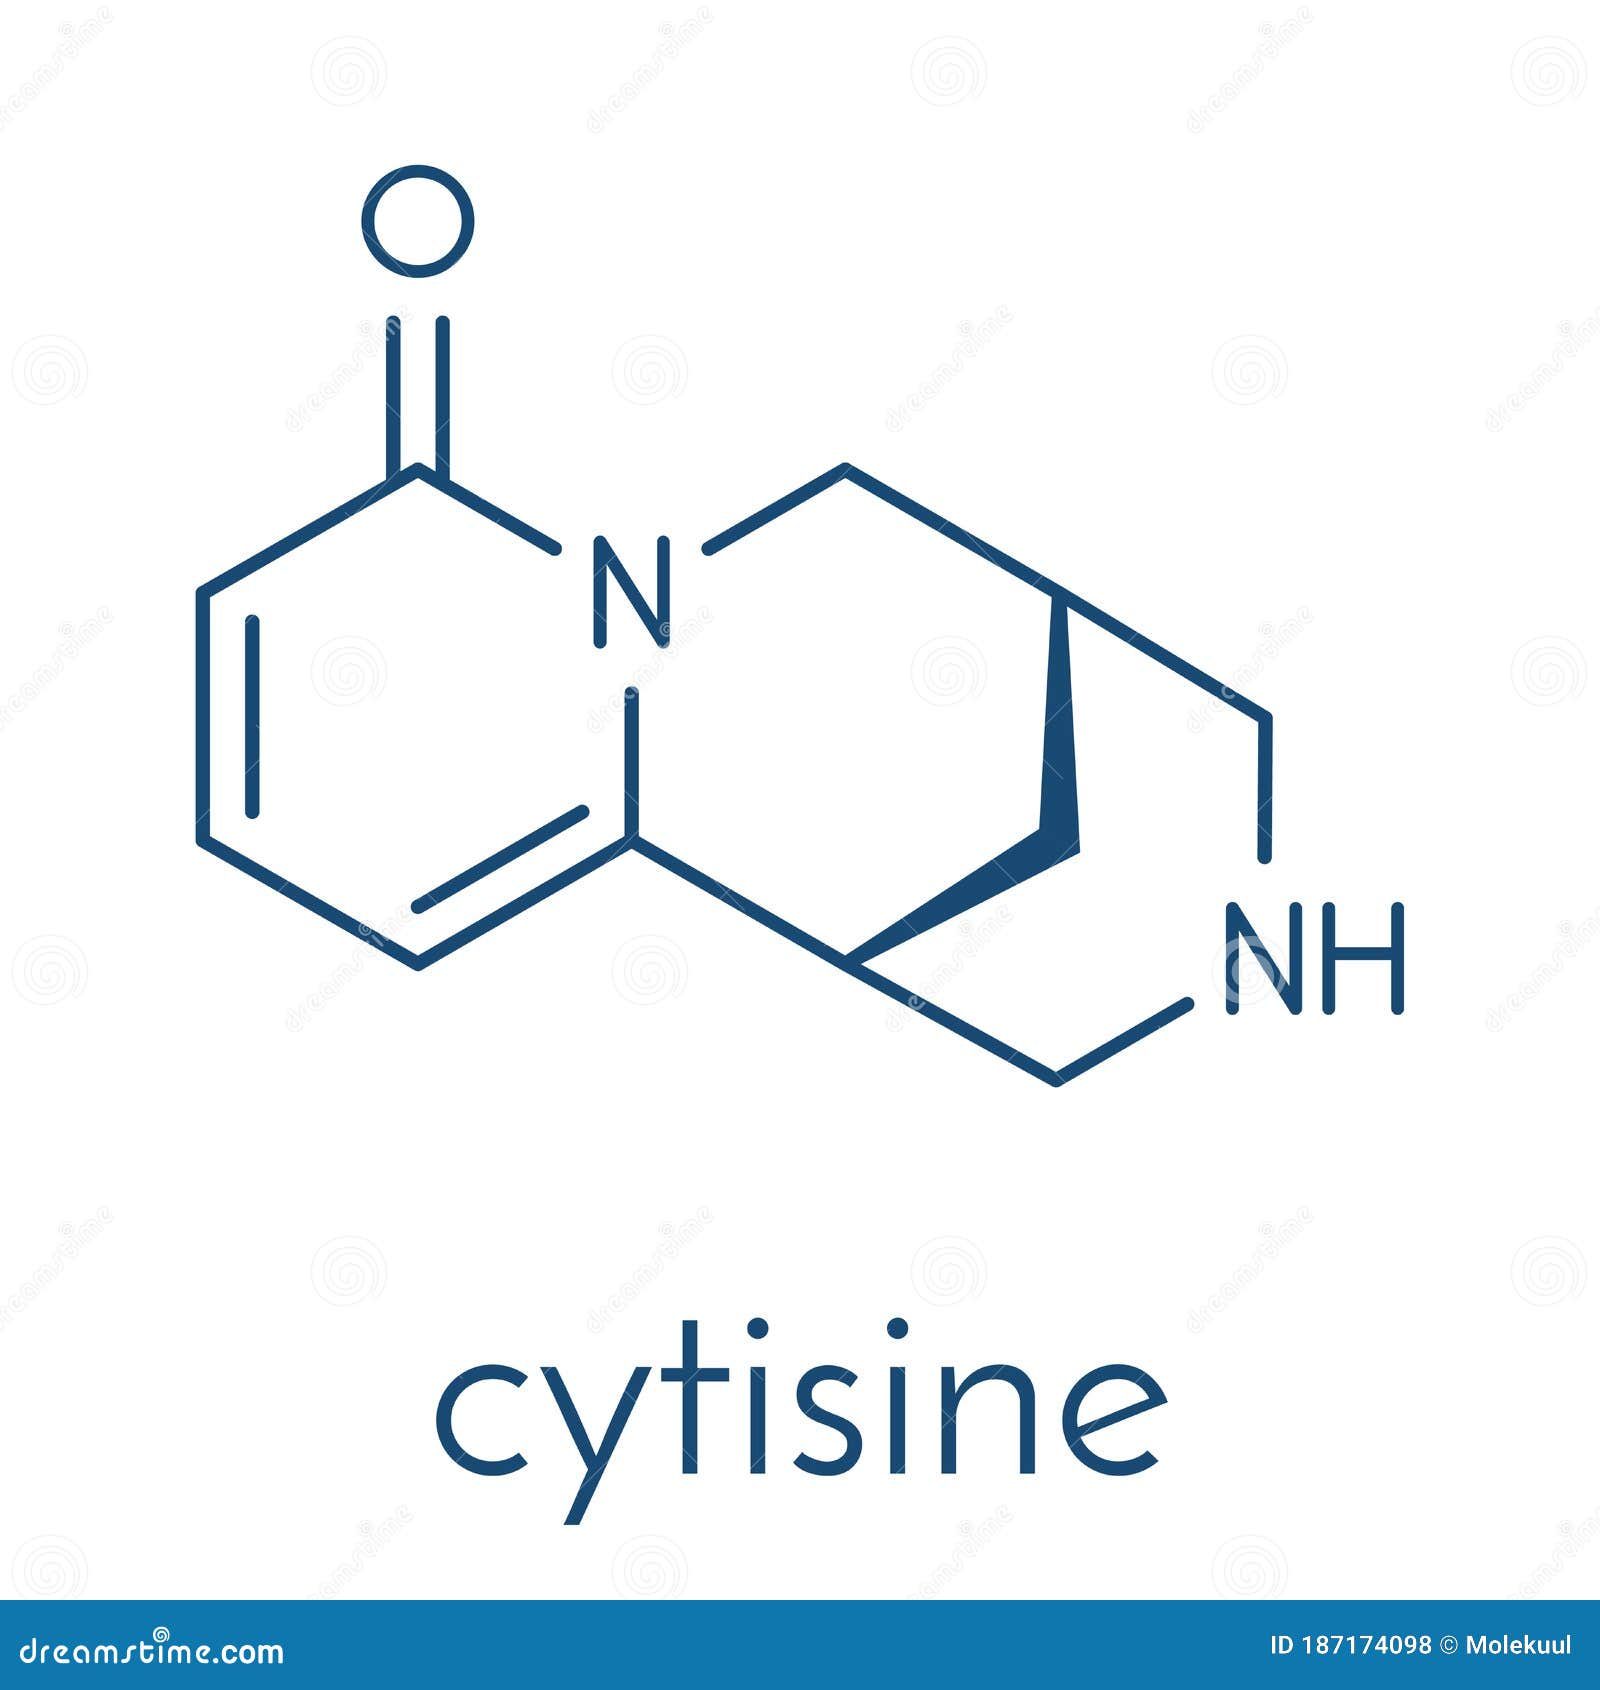 Cytisine - Chemistry LibreTexts